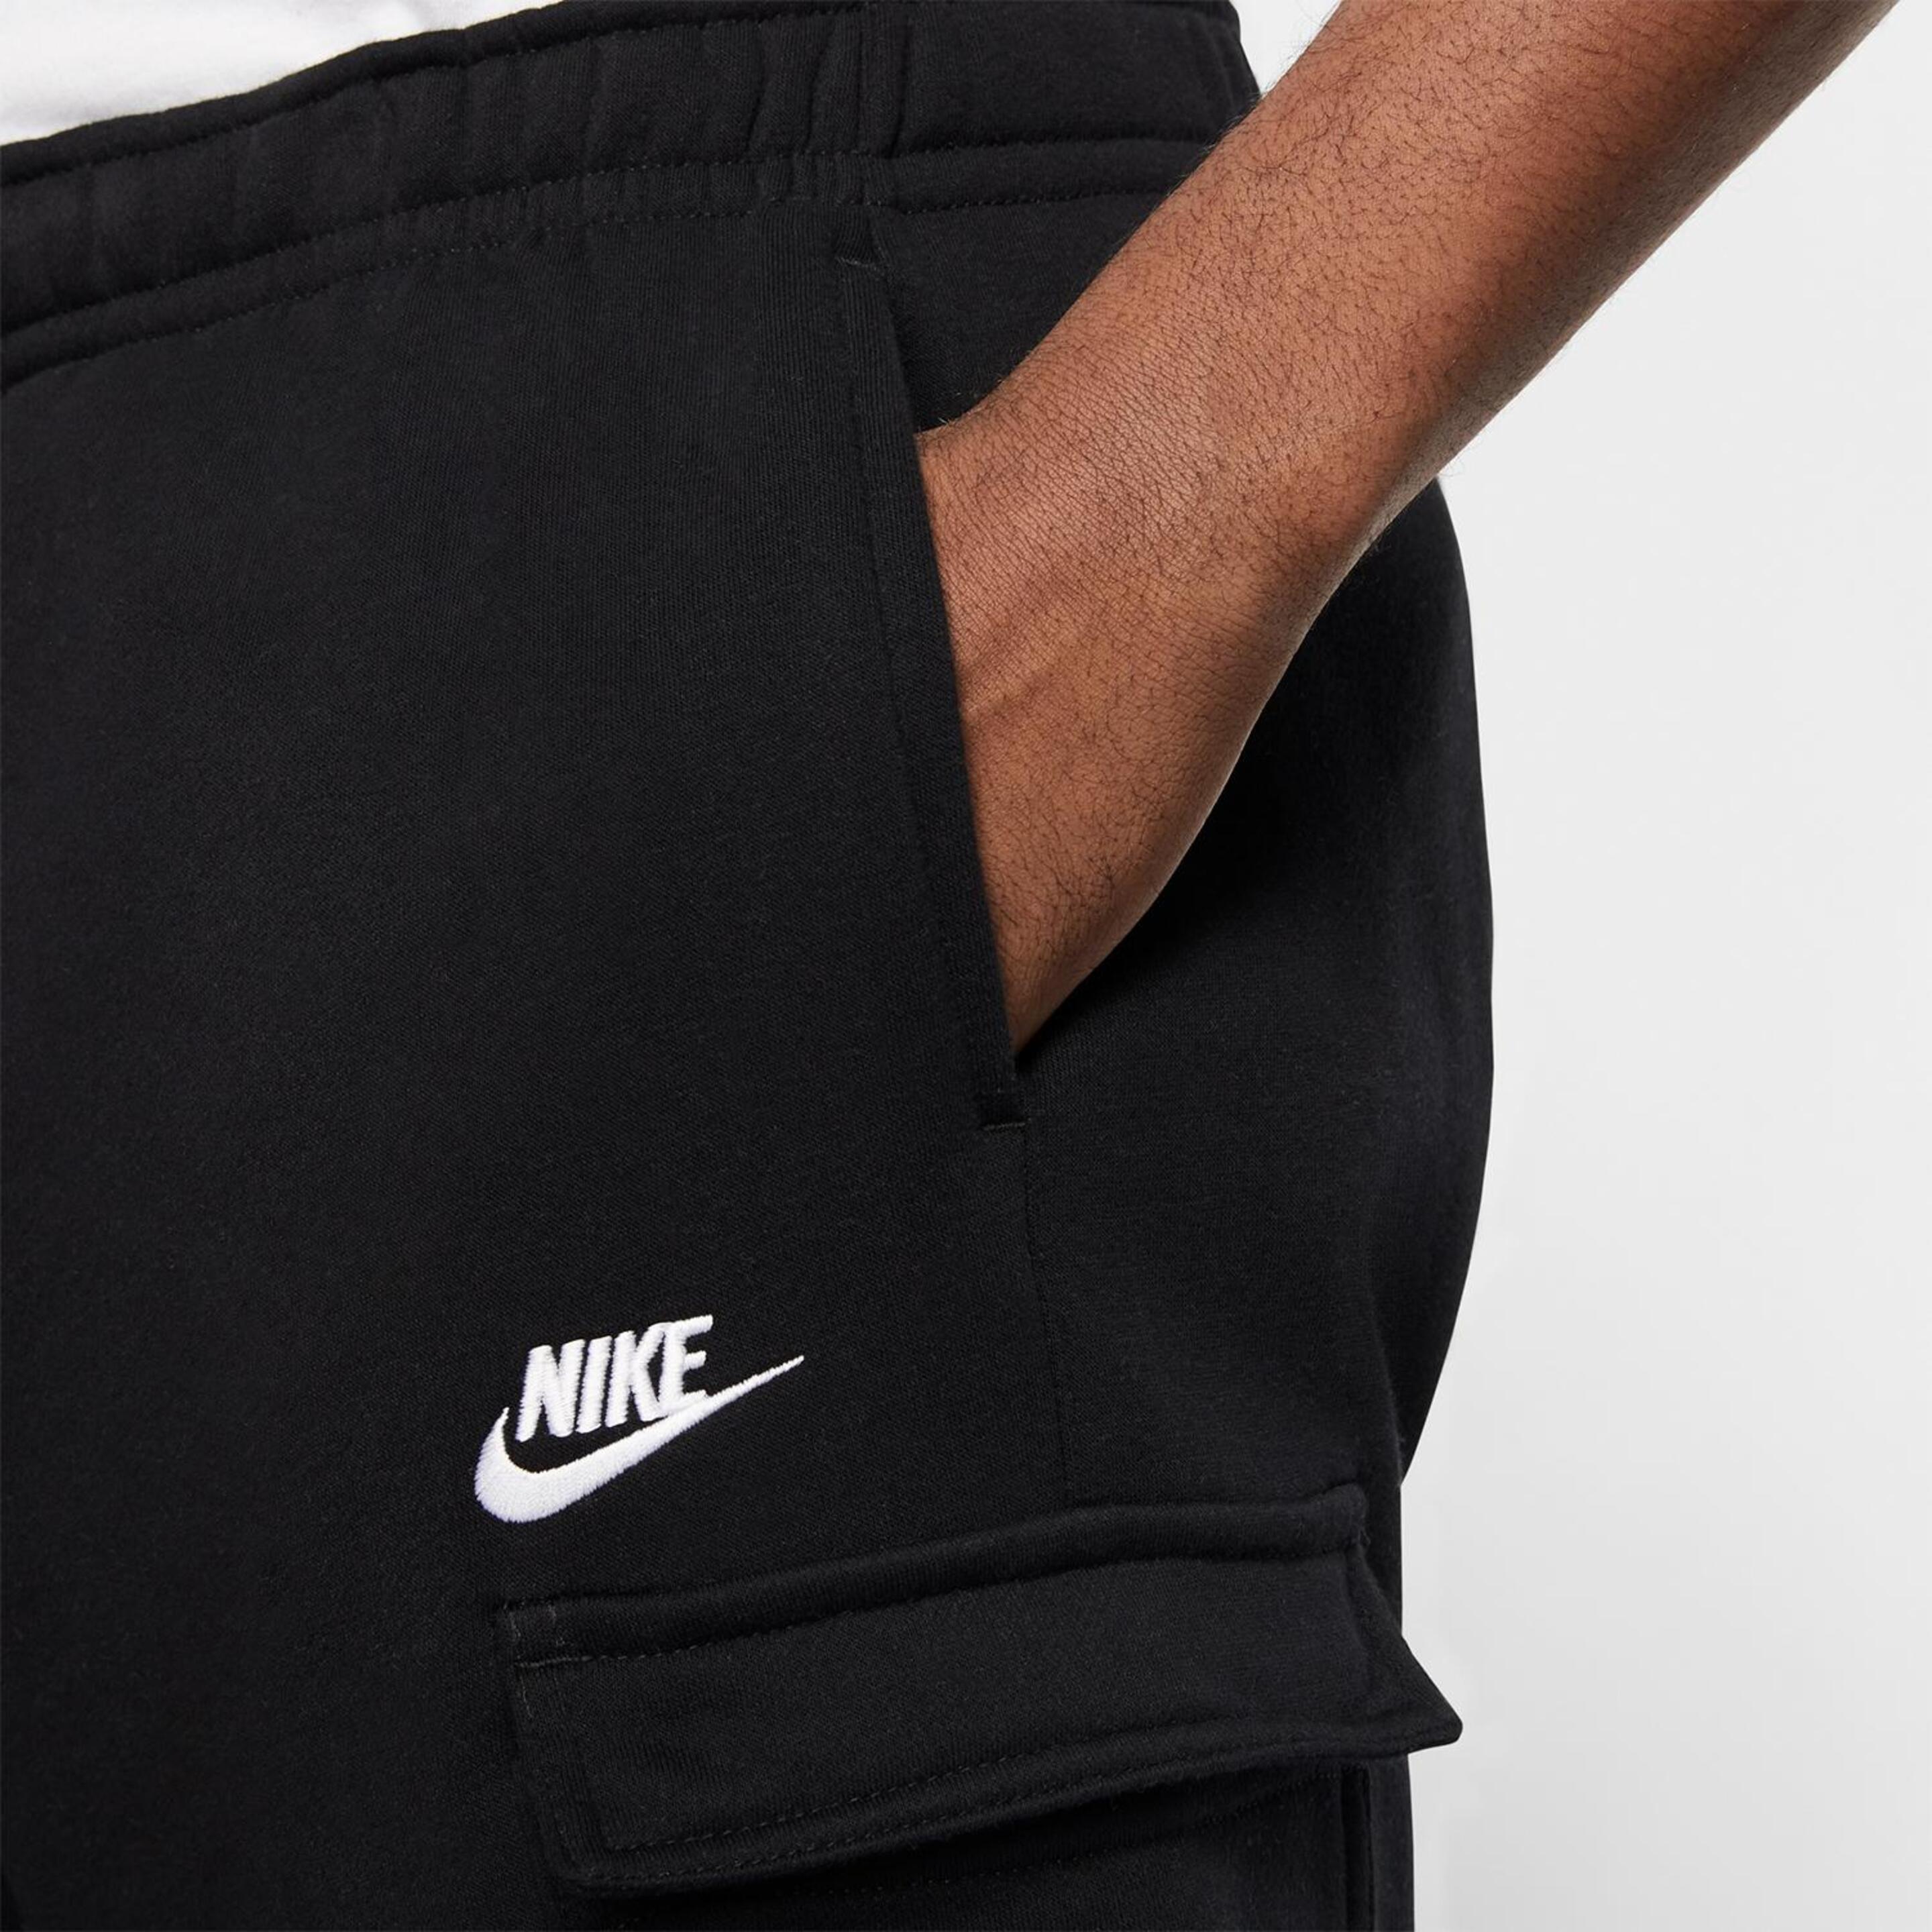 Nike Cargo - Negro - Pantalón Chándal Hombre